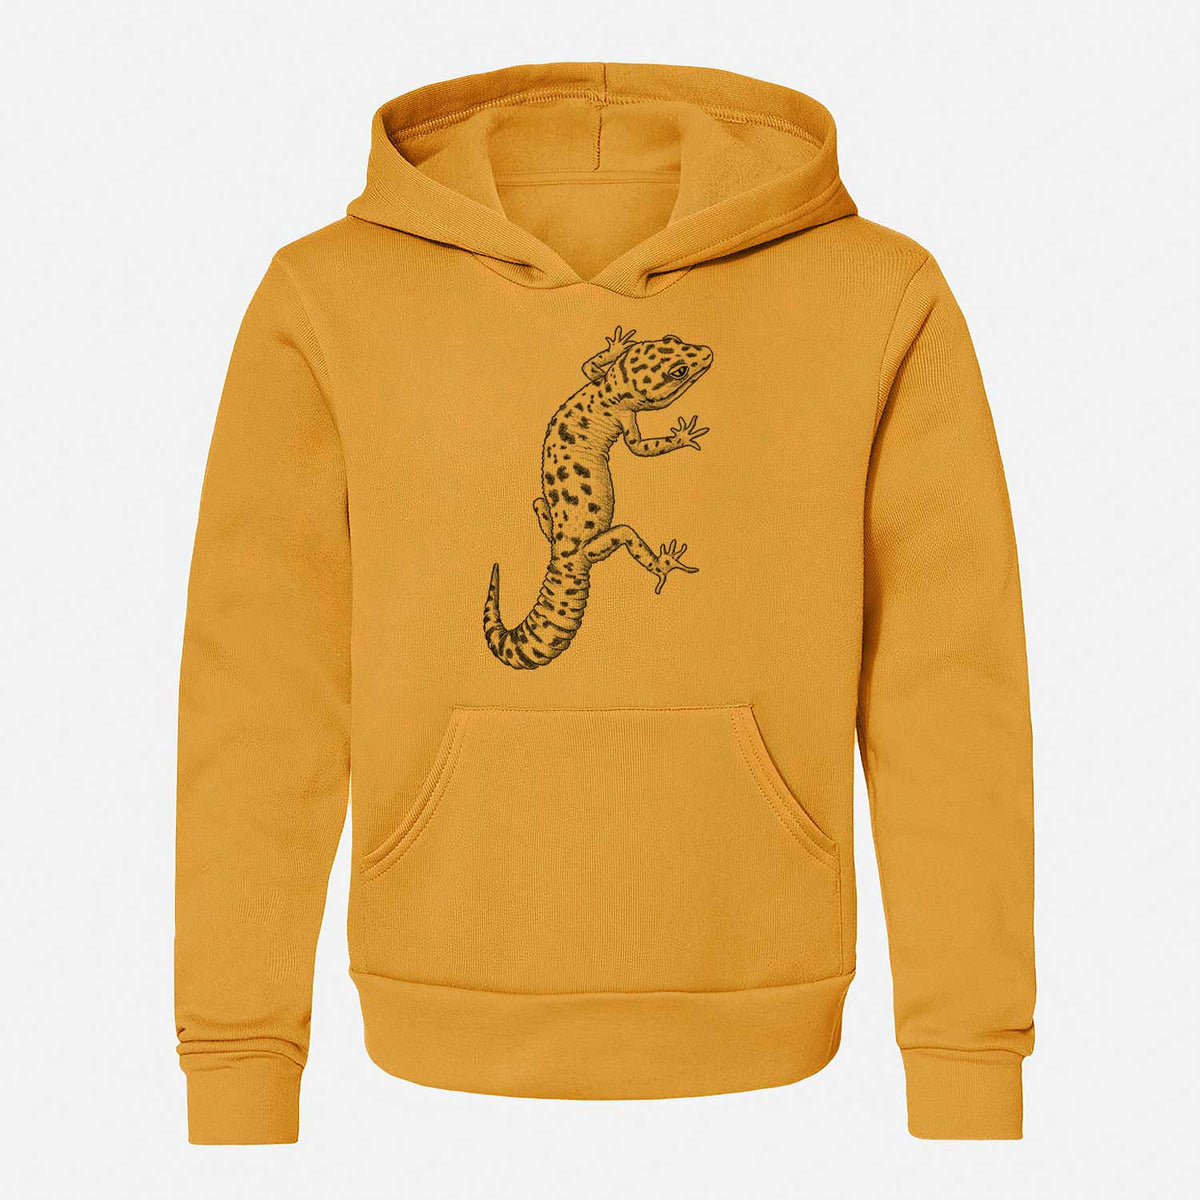 Eublepharis macularius - Leopard Gecko - Youth Hoodie Sweatshirt